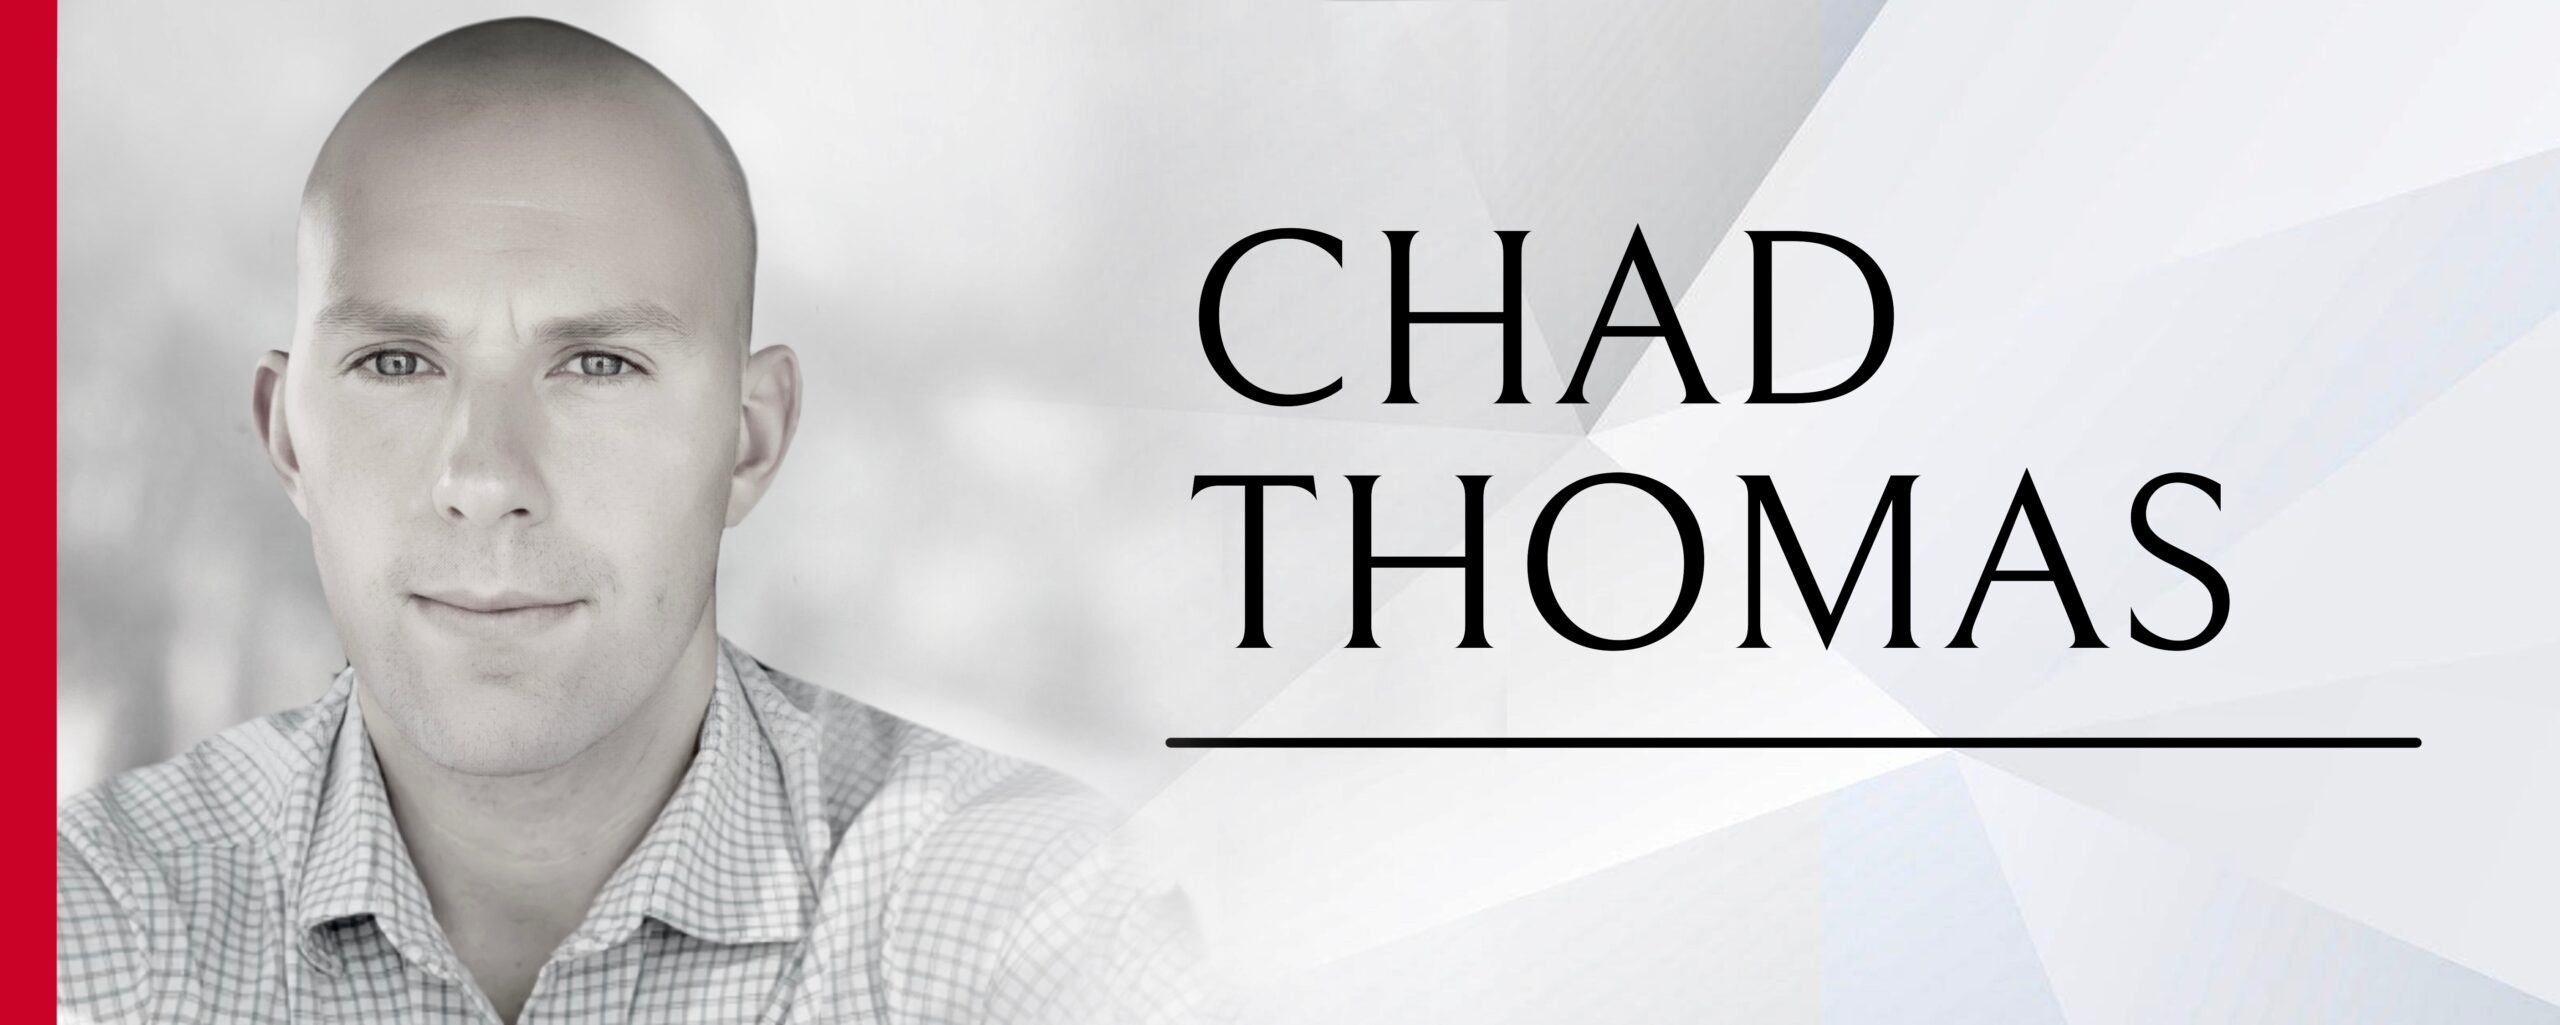 Chad Thomas